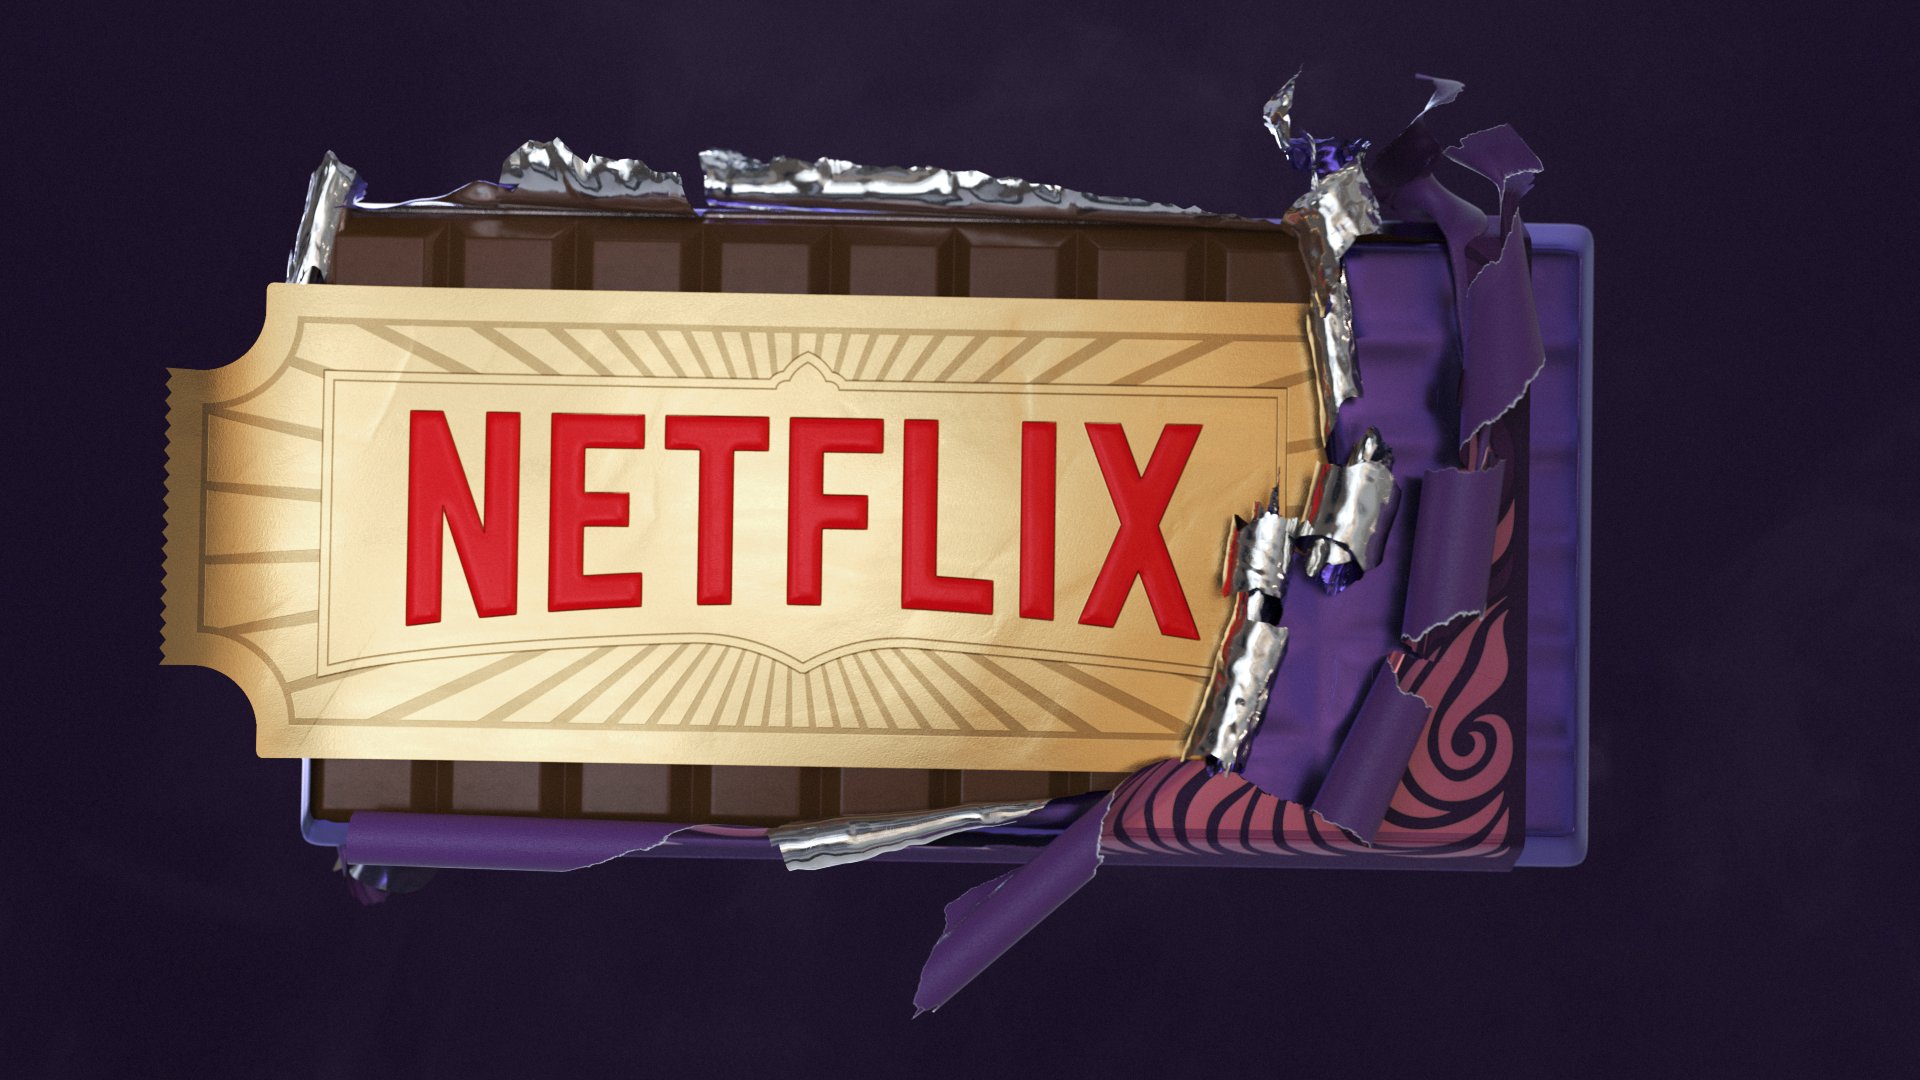 Тайка Вайтити снимет для Netflix два мультсериала по «Чарли и шоколадной фабрике»